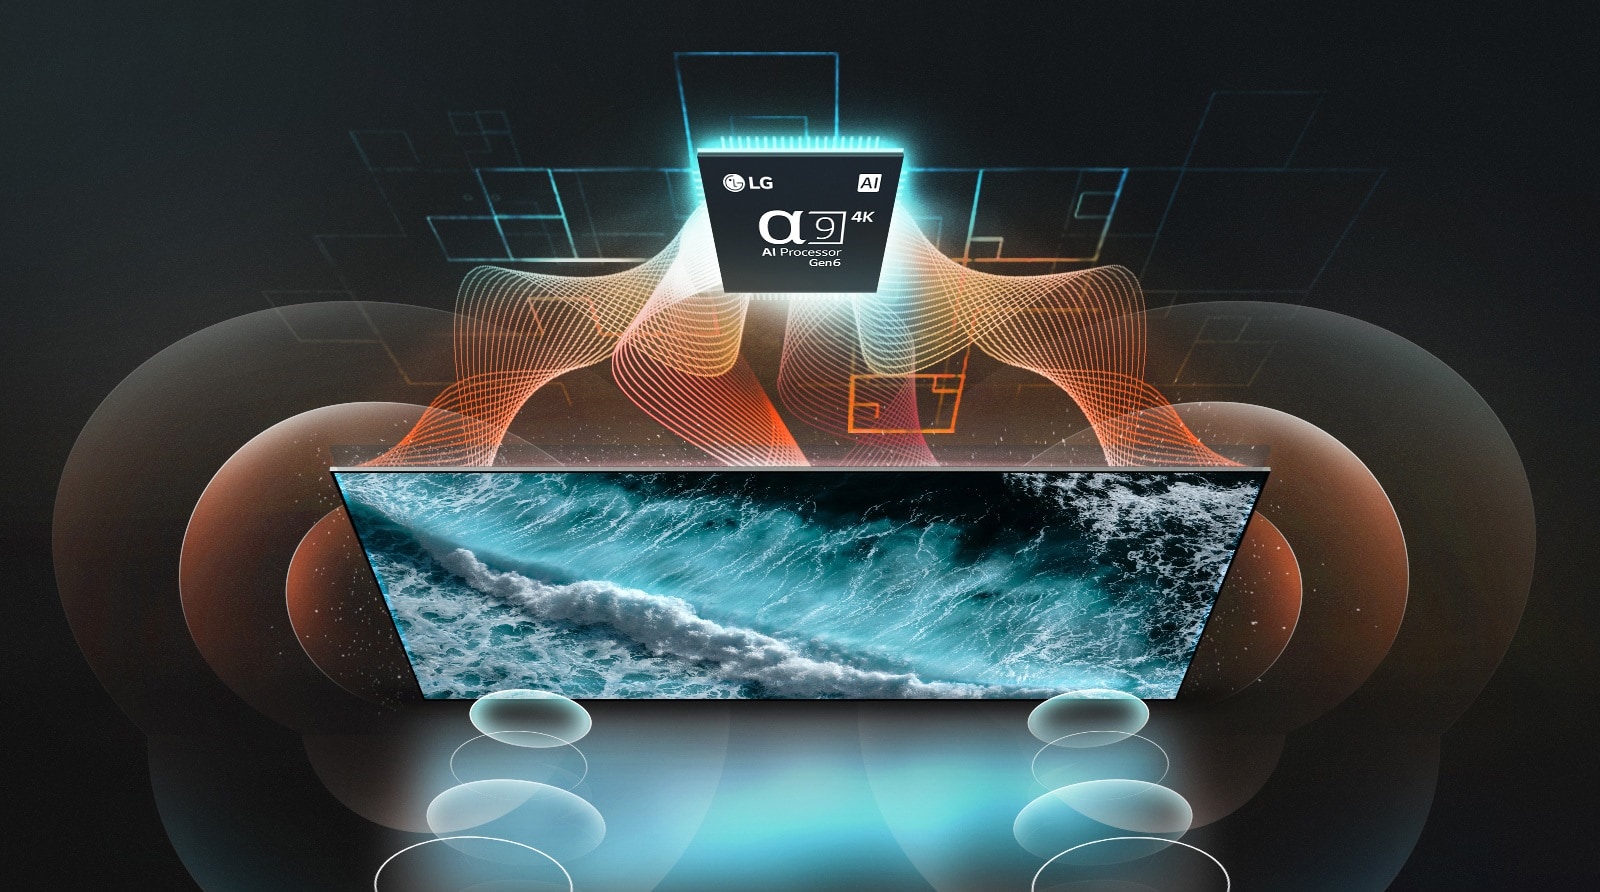 LG OLED TV i α9 AI Processor 4K Gen6 slikani odozgo. Narandžasti i tirkizni talasi povezuju čip i TV, a mehurići koji oslikavaju zvuk izbijaju kao zraci iz ekrana. 